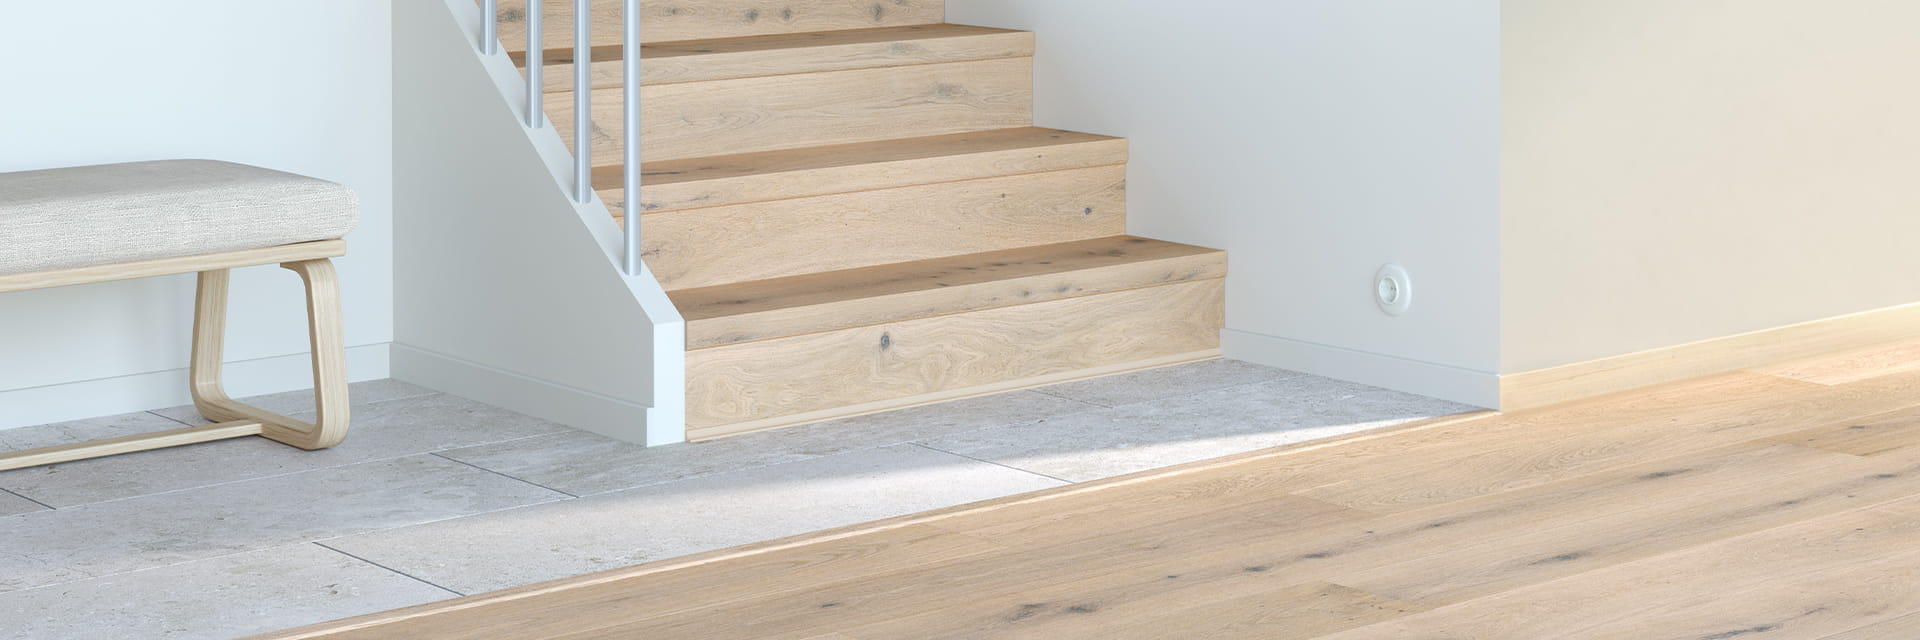 primer plano de una escalera con perfiles de madera noble a juego